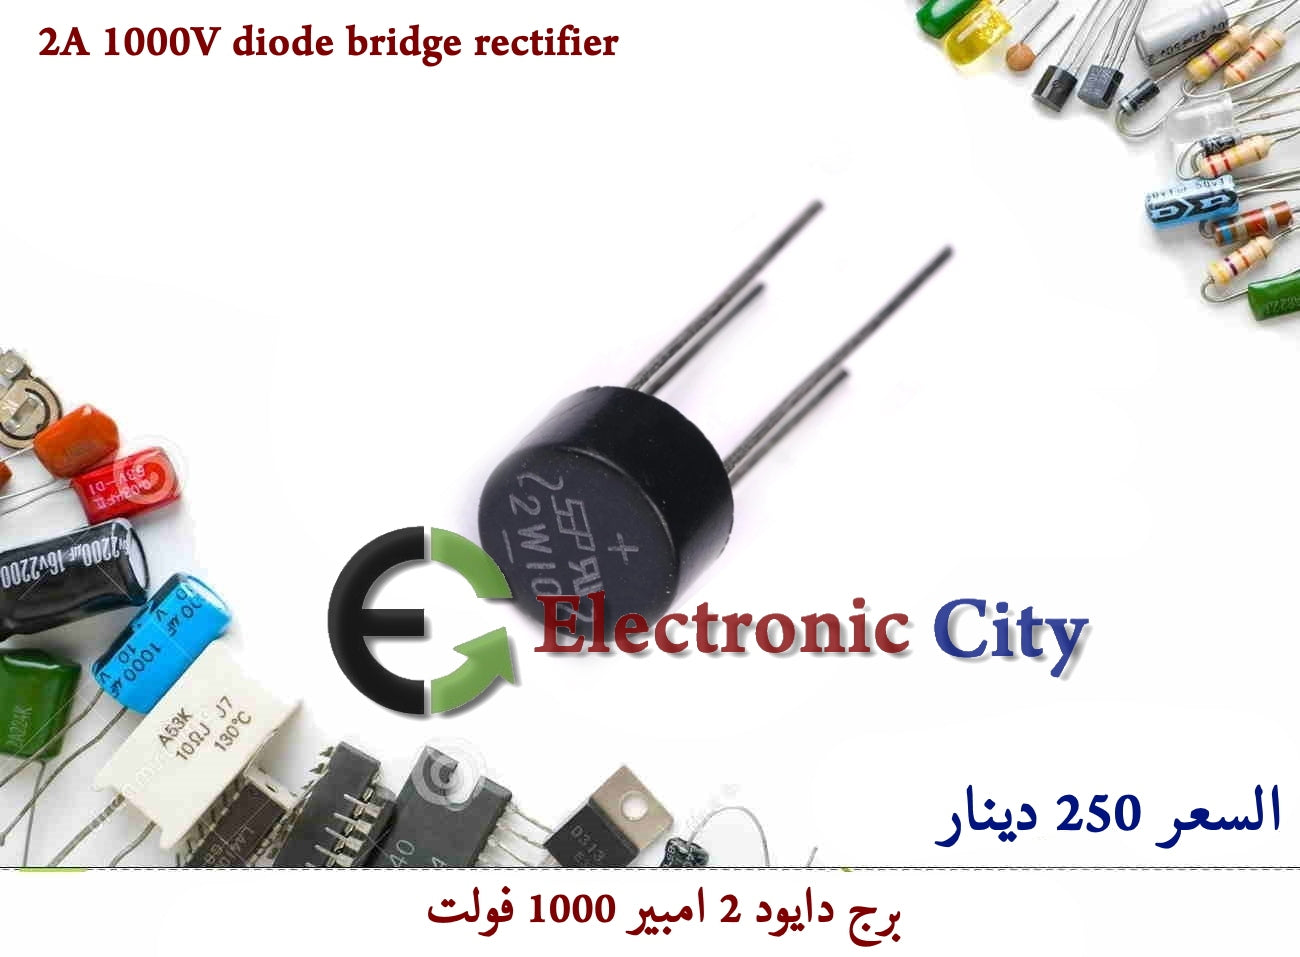 2A 1000V diode bridge rectifier